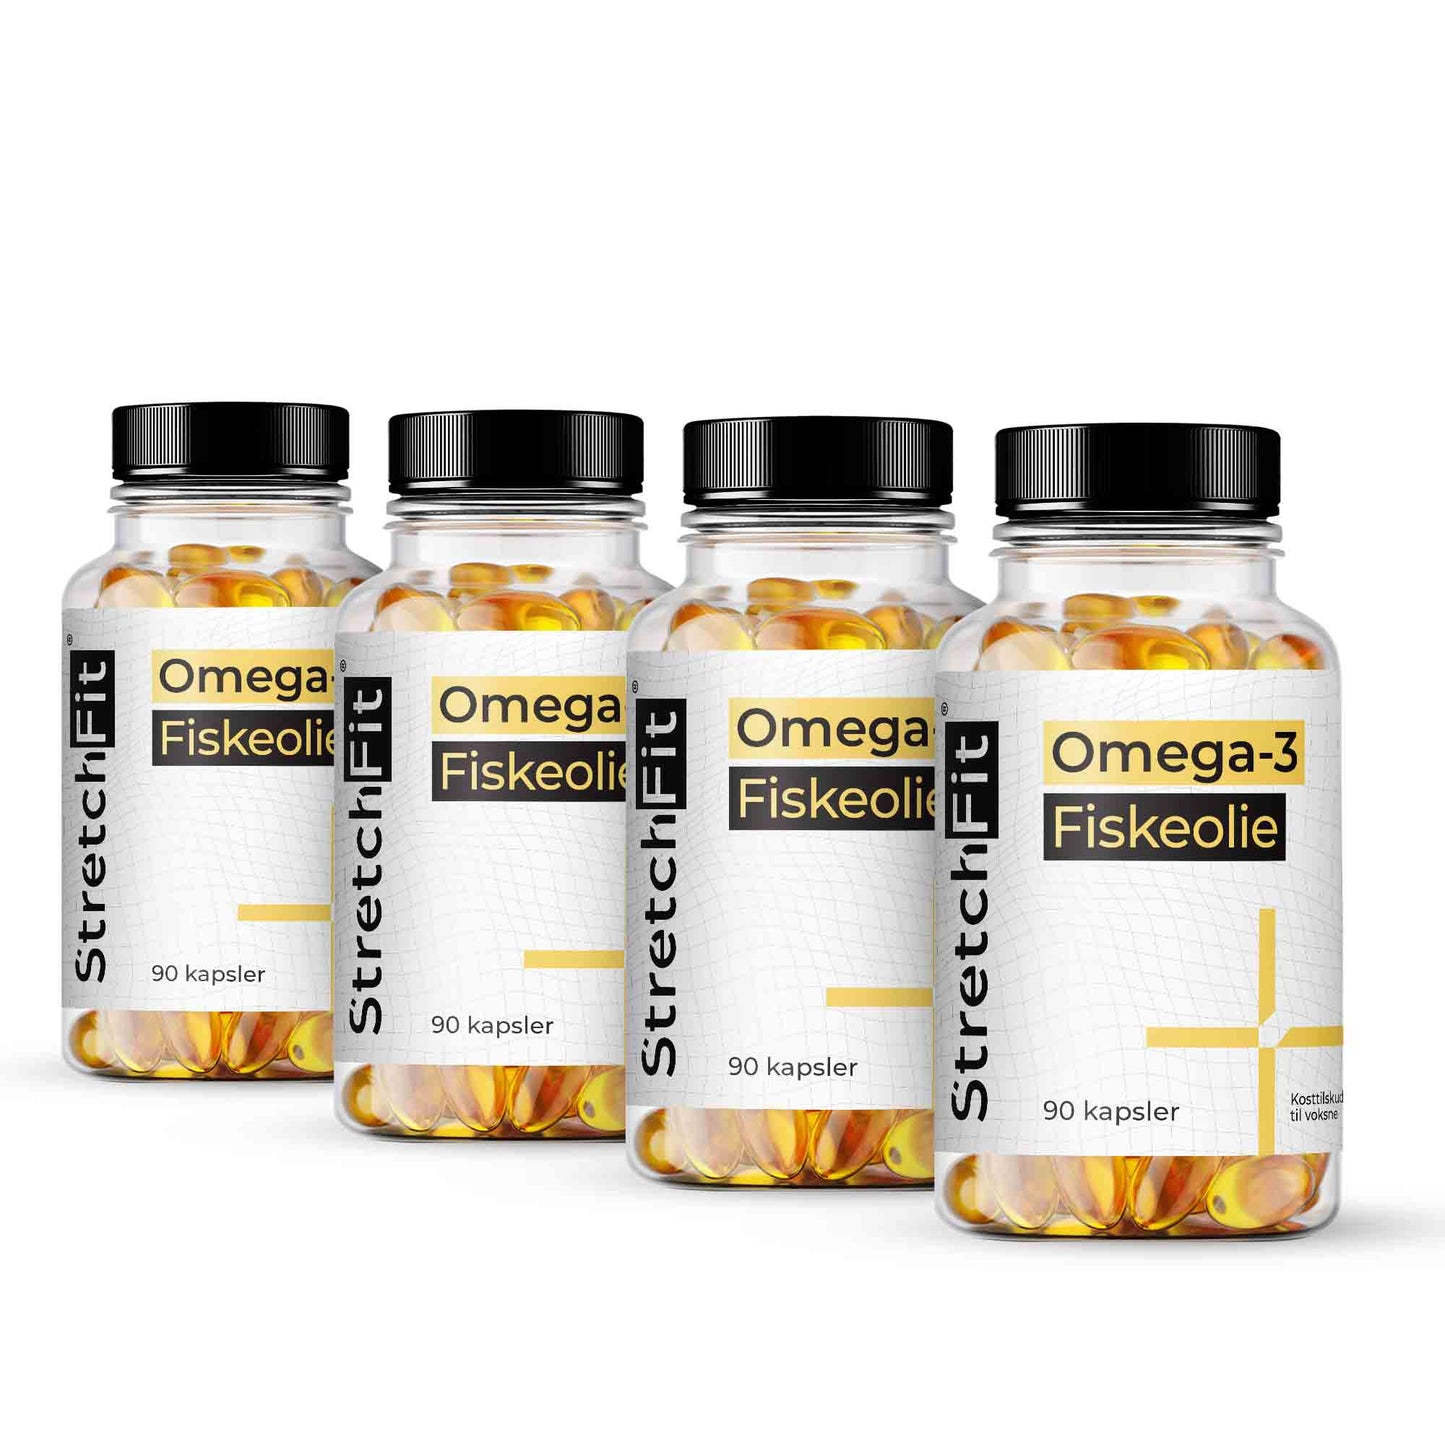 Omega 3 Fiskeolie - StretchFit™ 90 kapsler